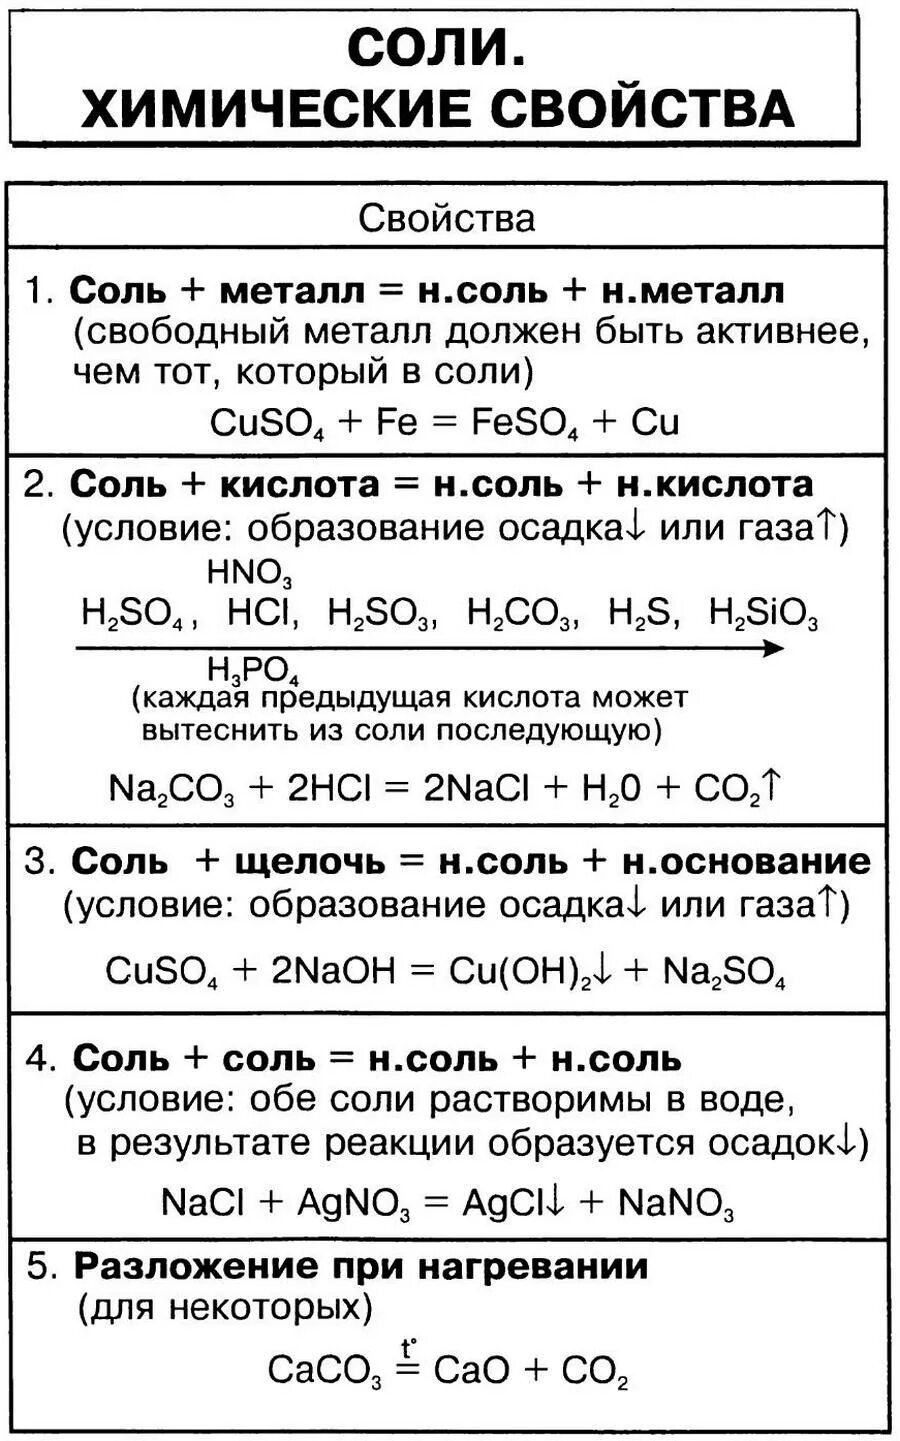 Реакции оснований 8 класс химия. Химические свойства солей 8 класс химия таблица. Свойства солей химия 8 класс. Соли химические свойства 8 класс таблица. Химические свойства солей 8 класс.